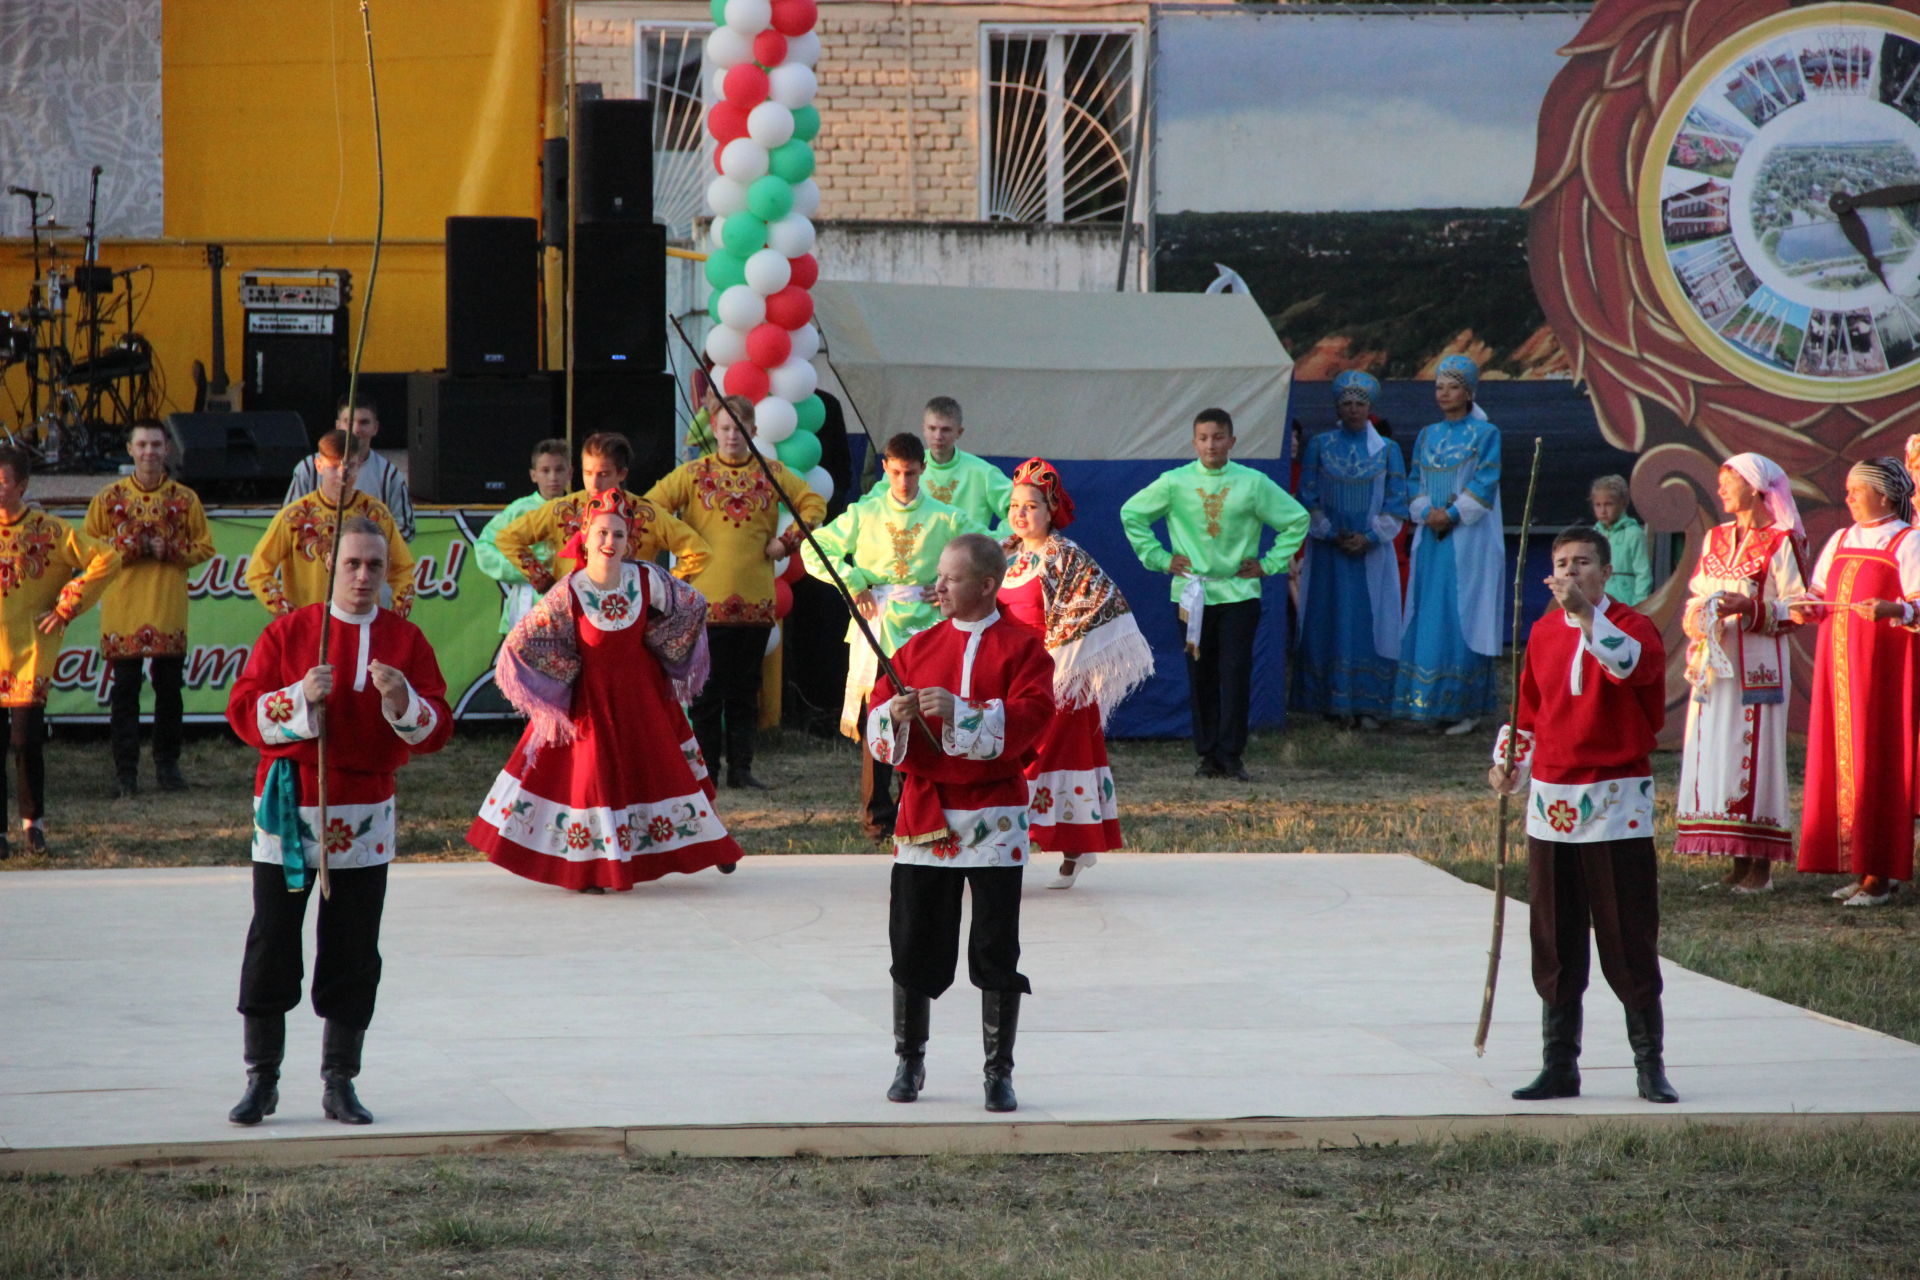 Тетюшане и гости района отметили День Республики Татарстан и 240-летний юбилей города